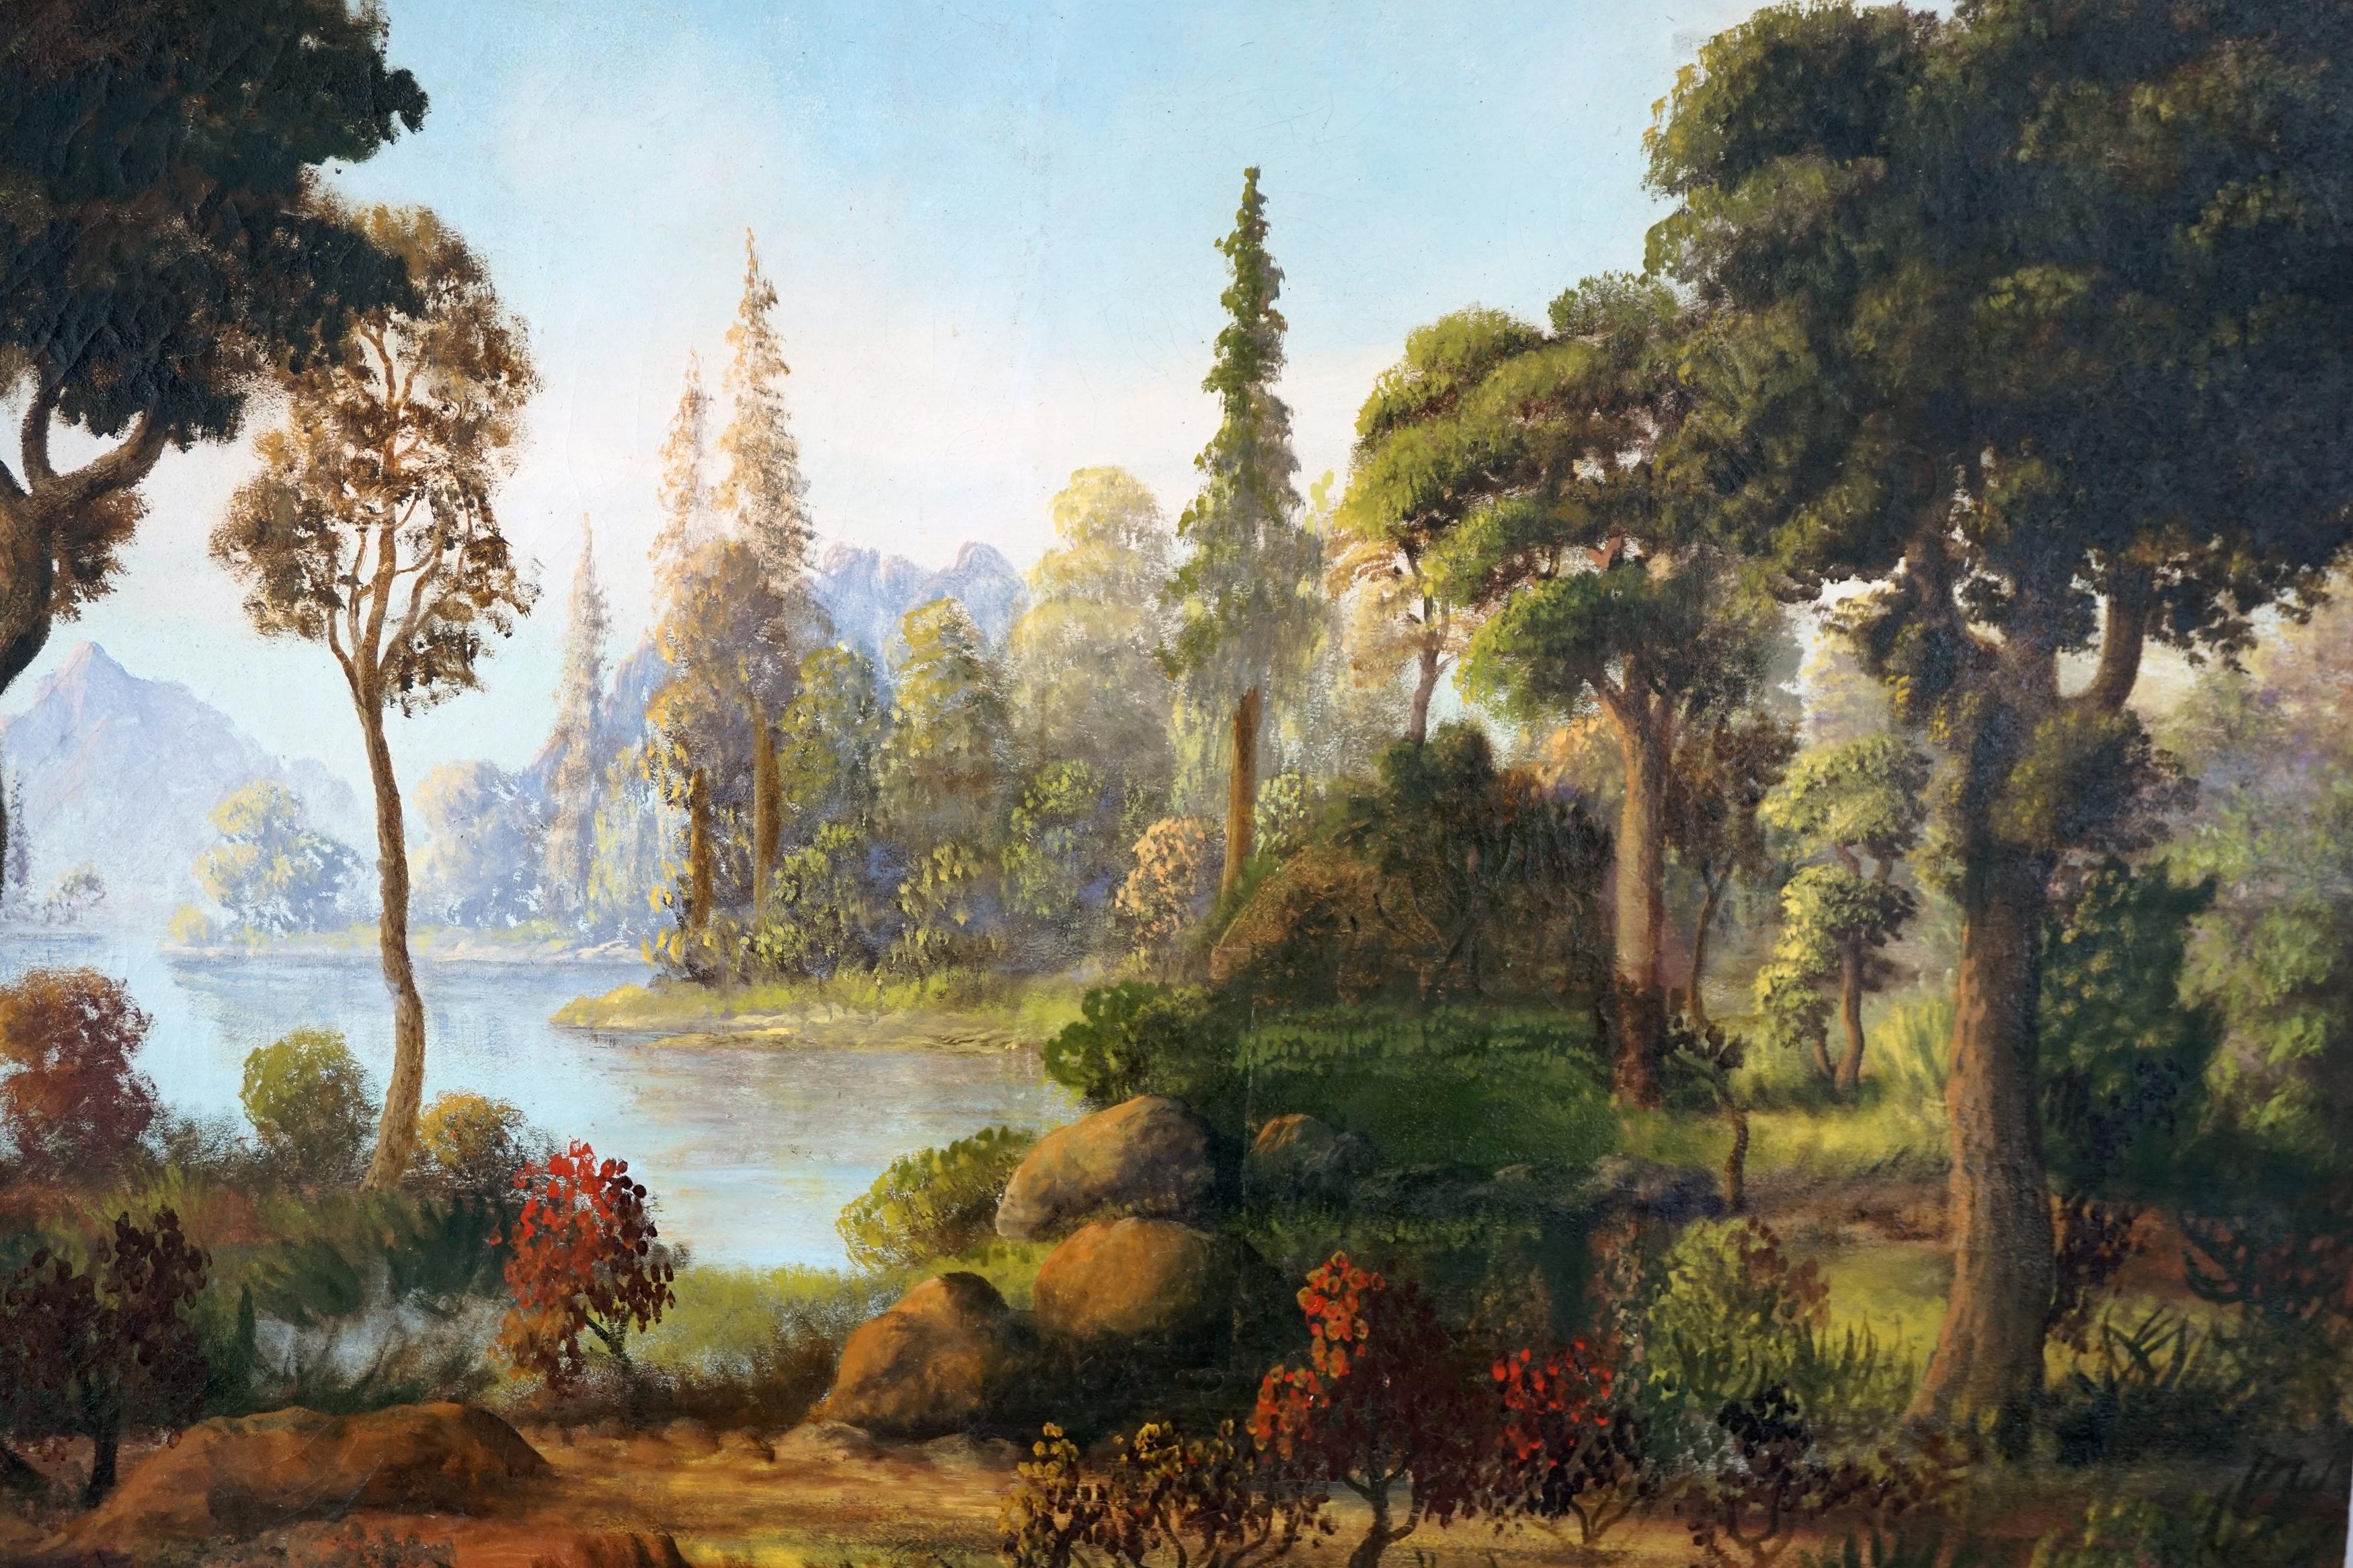 Landscape Painting Fisher - Paysage d'automne en bord de lac de l'Hudson River School, début du 20e siècle